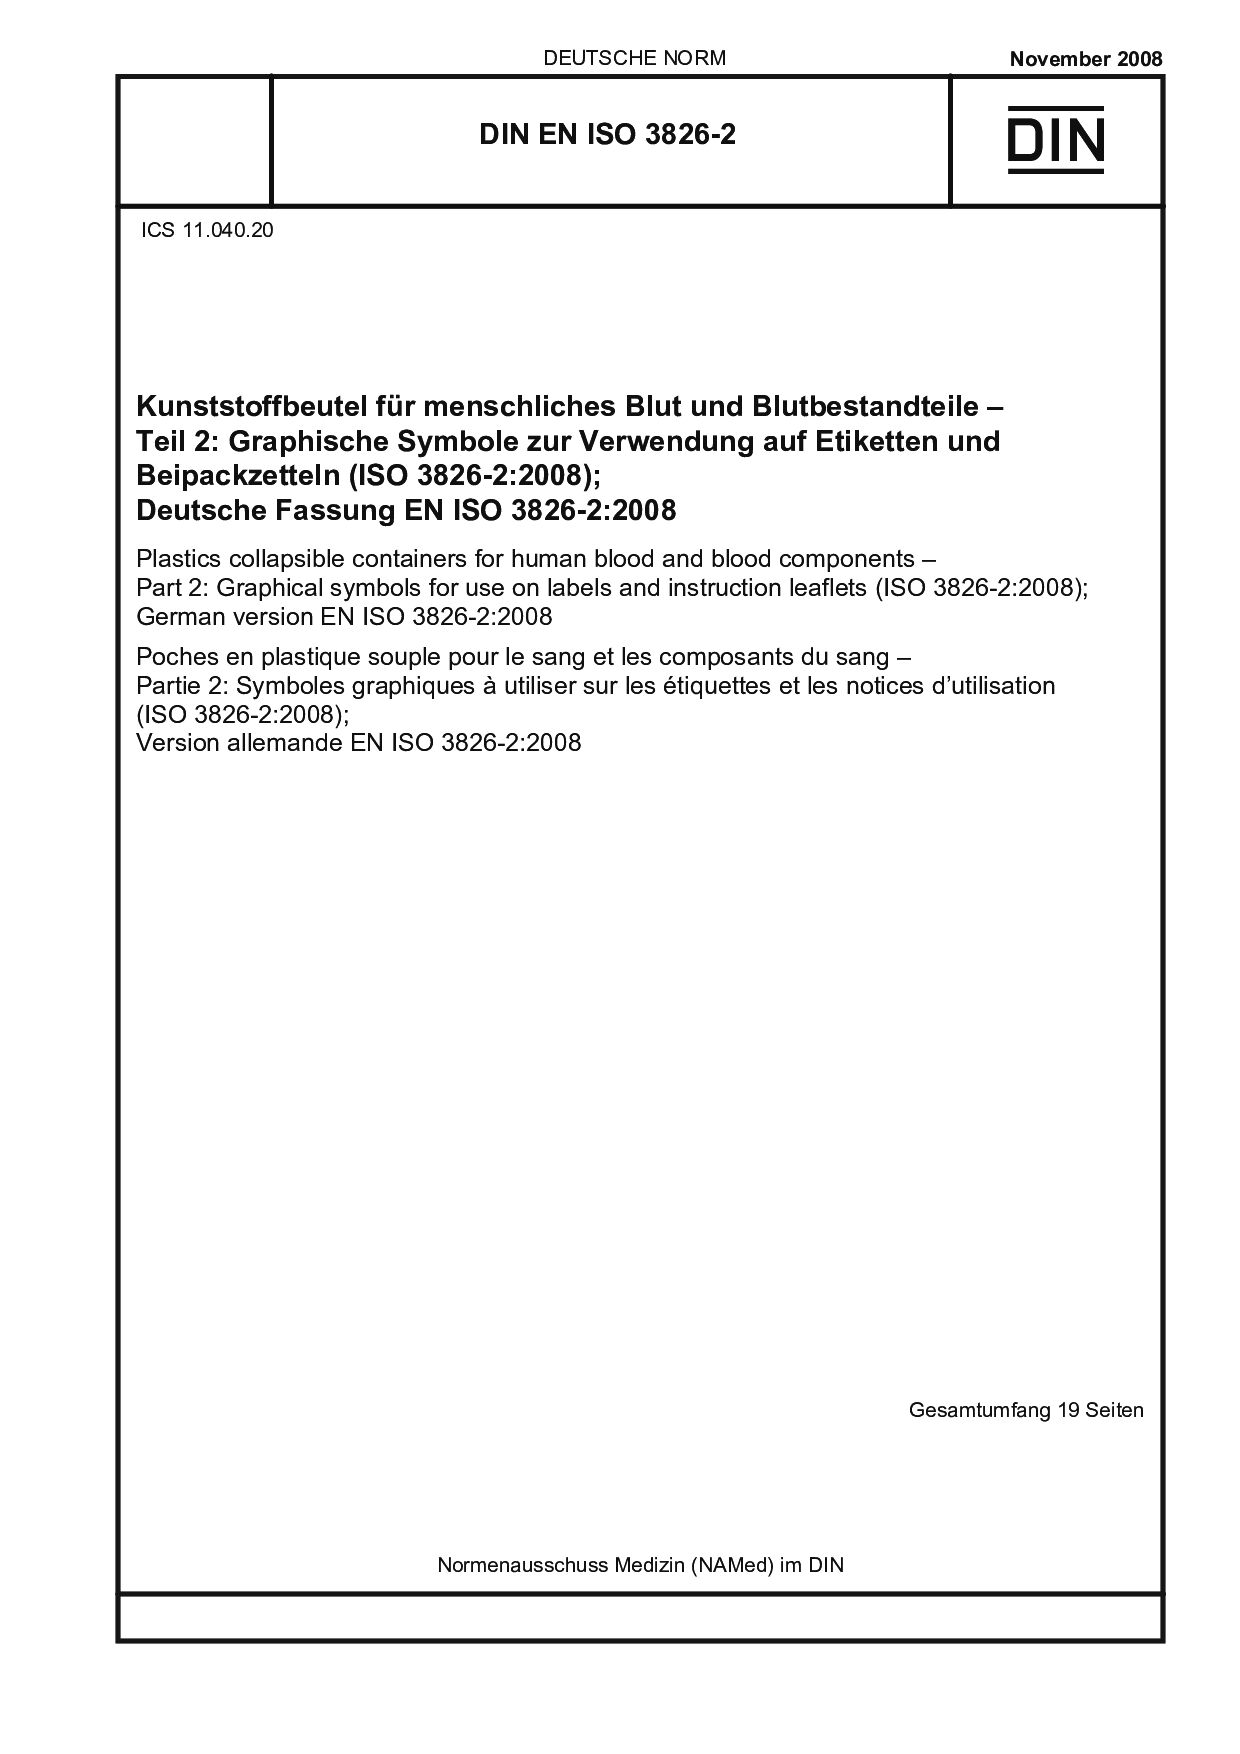 DIN EN ISO 3826-2:2008